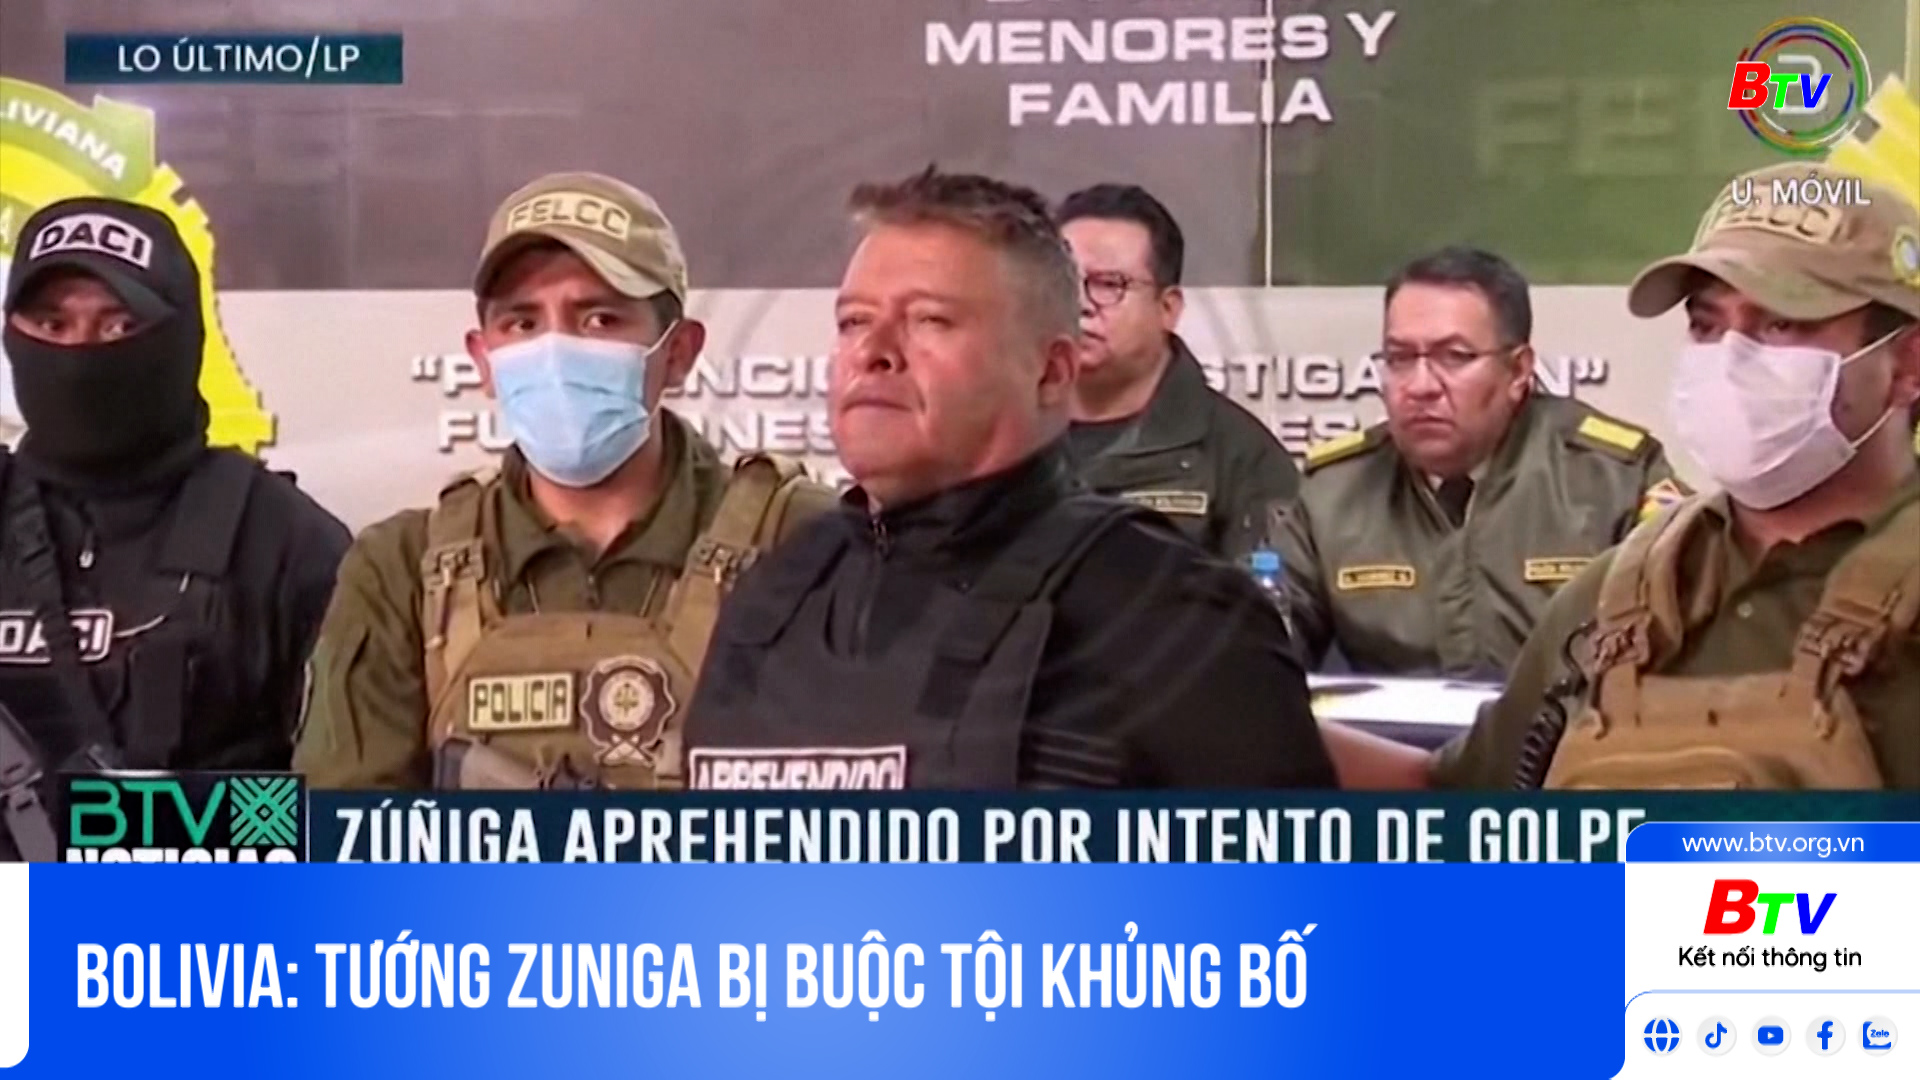 Bolivia: tướng Zuniga bị buộc tội khủng bố